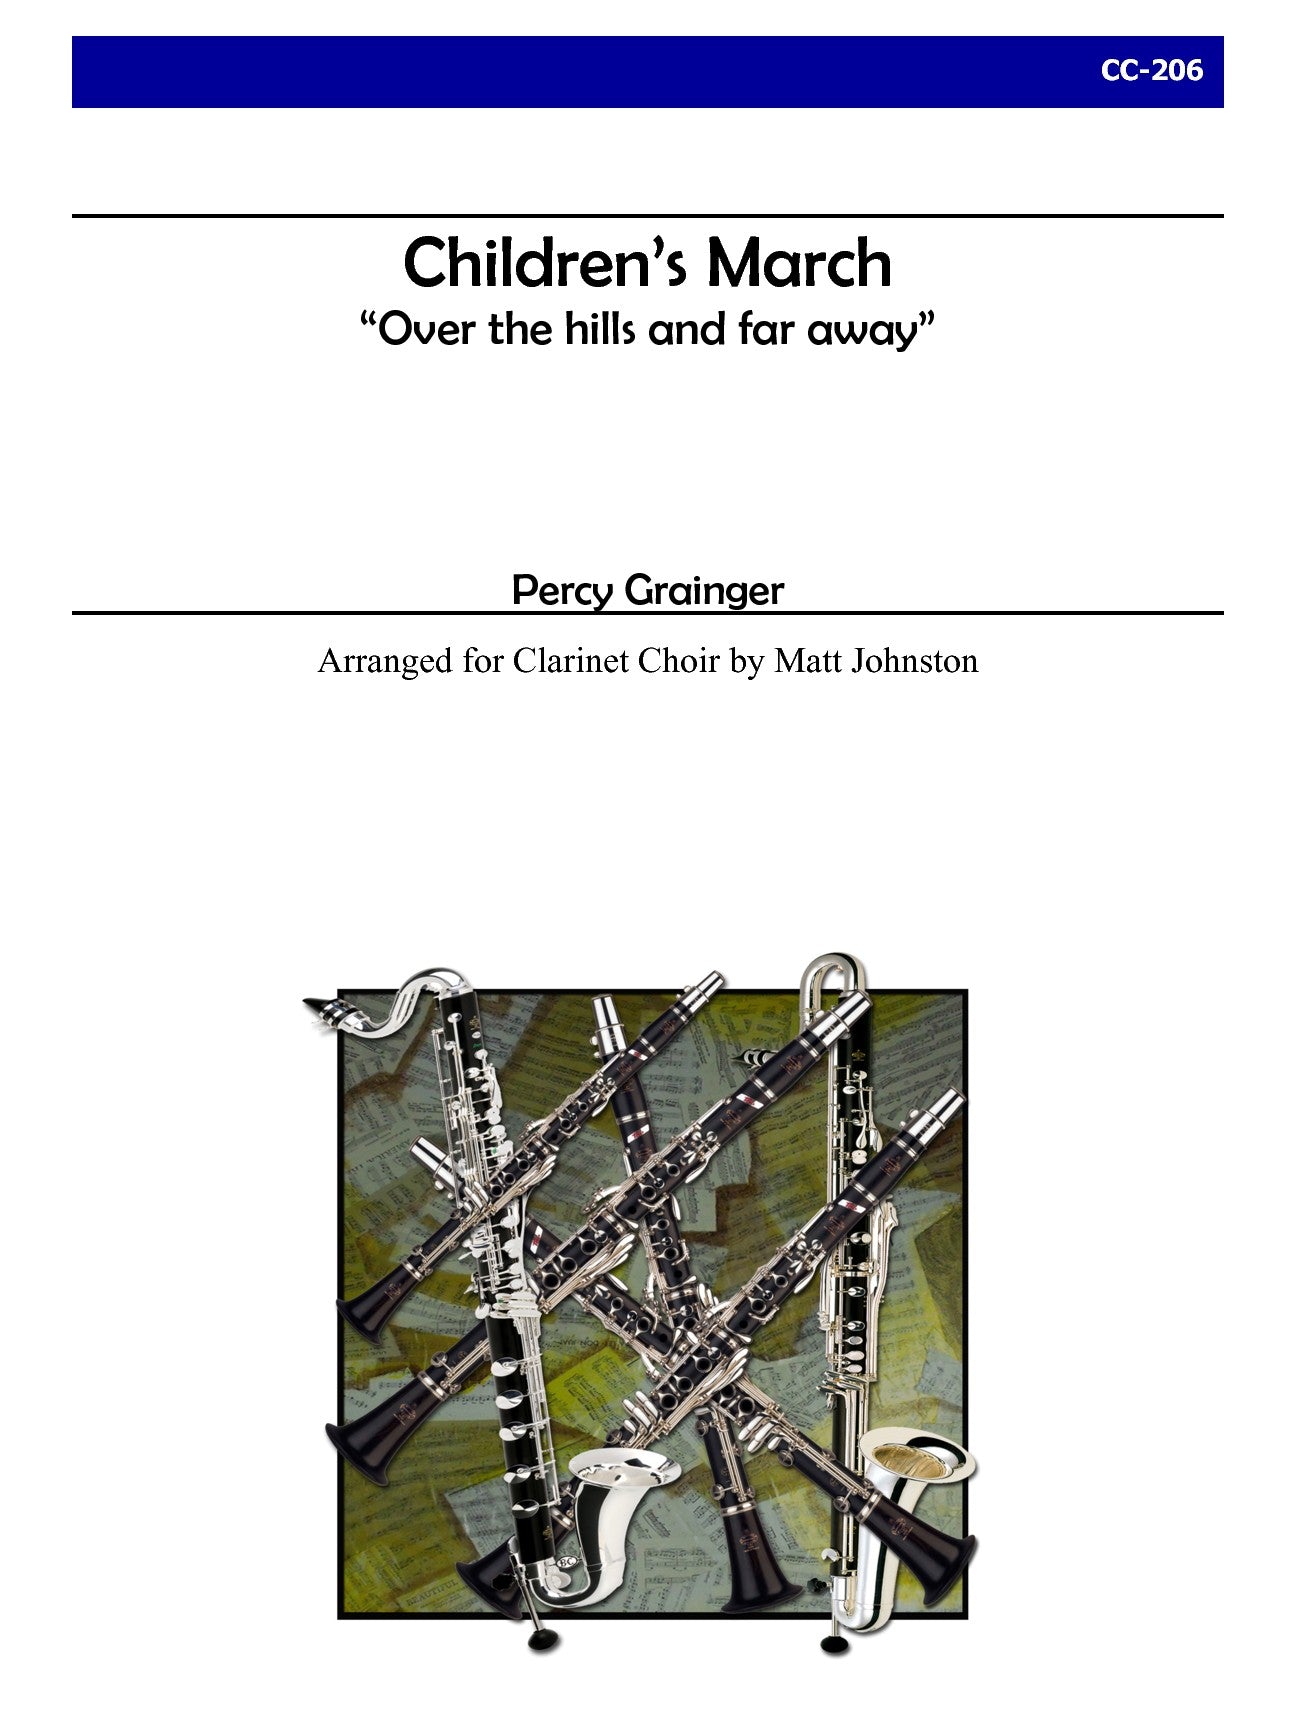 Grainger (arr. Matt Johnston) - Children's March for Clarinet Choir